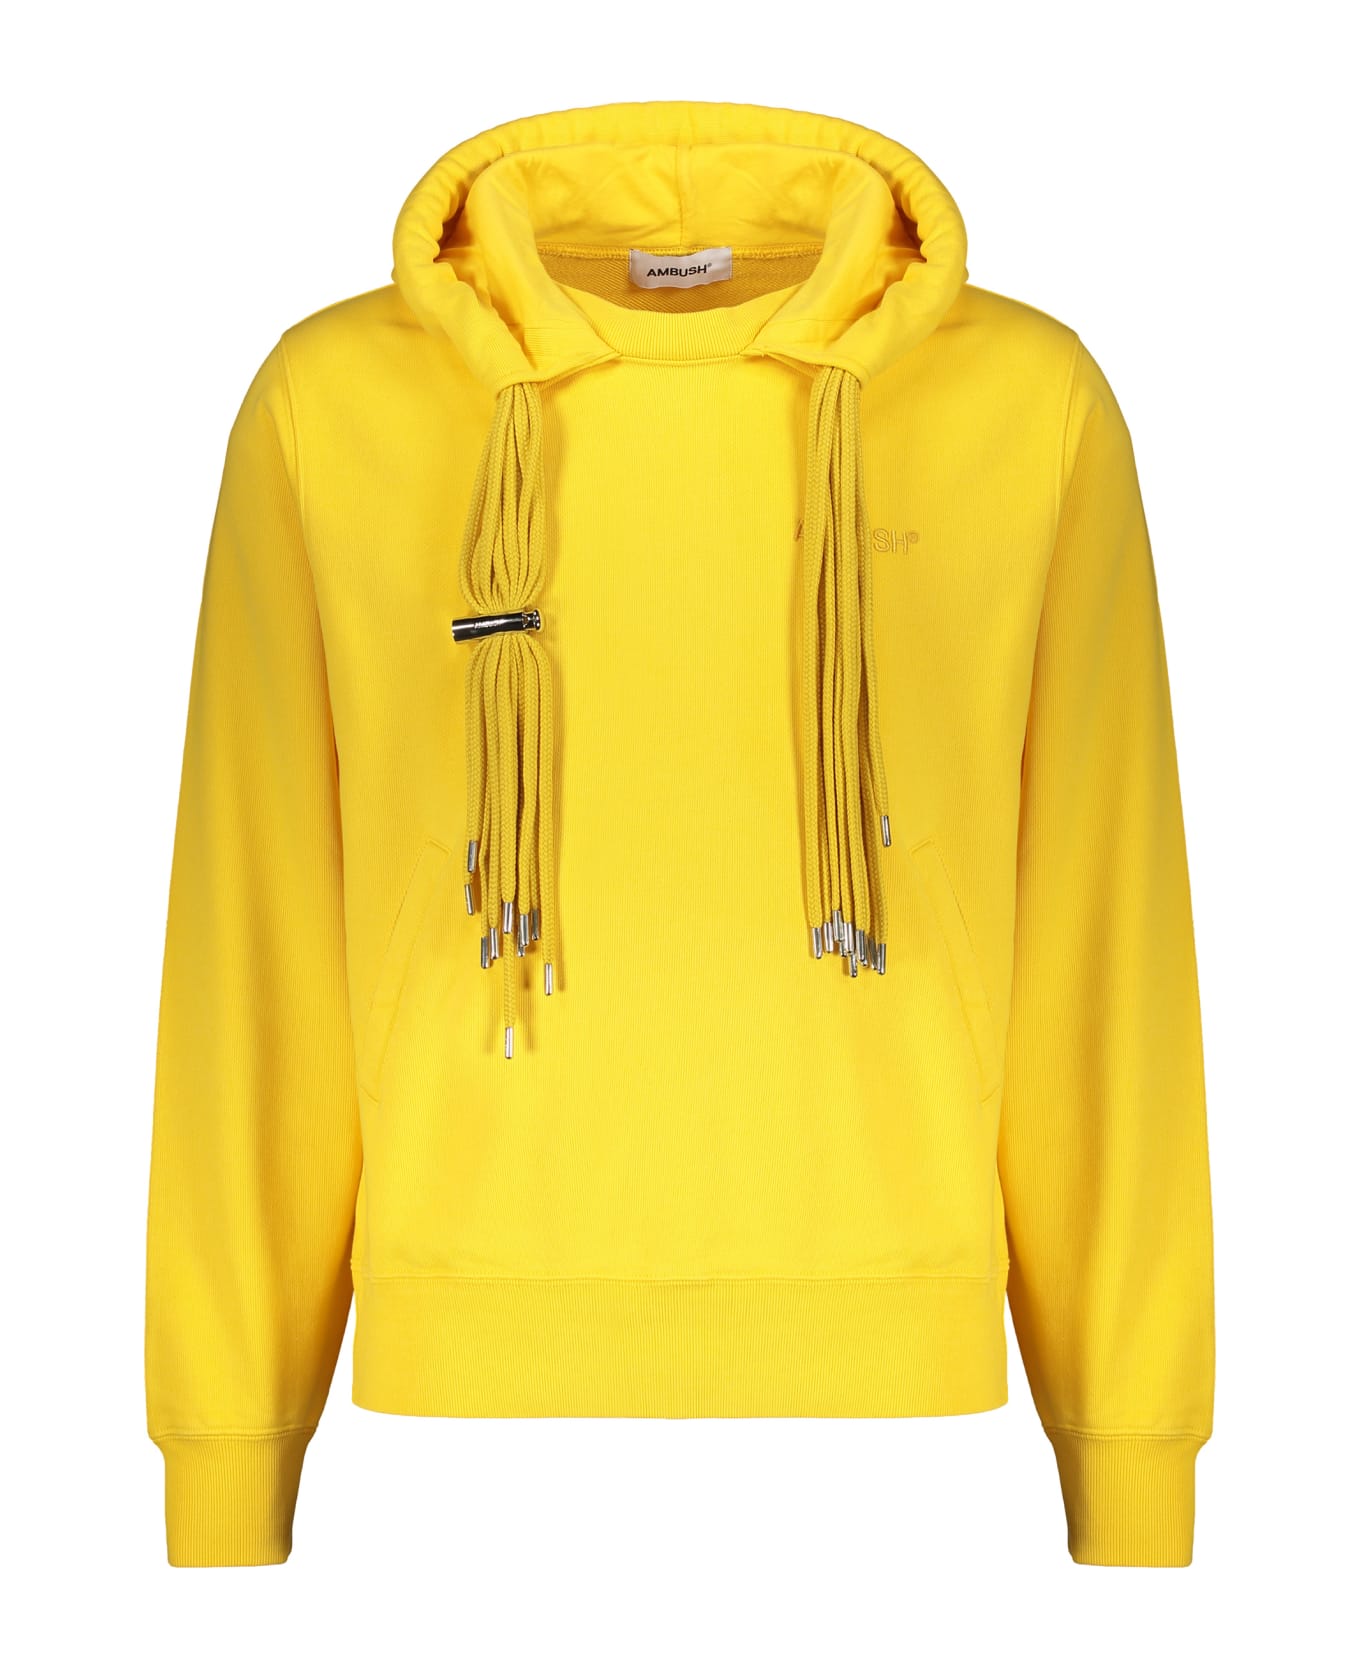 AMBUSH Hooded Sweatshirt - Yellow